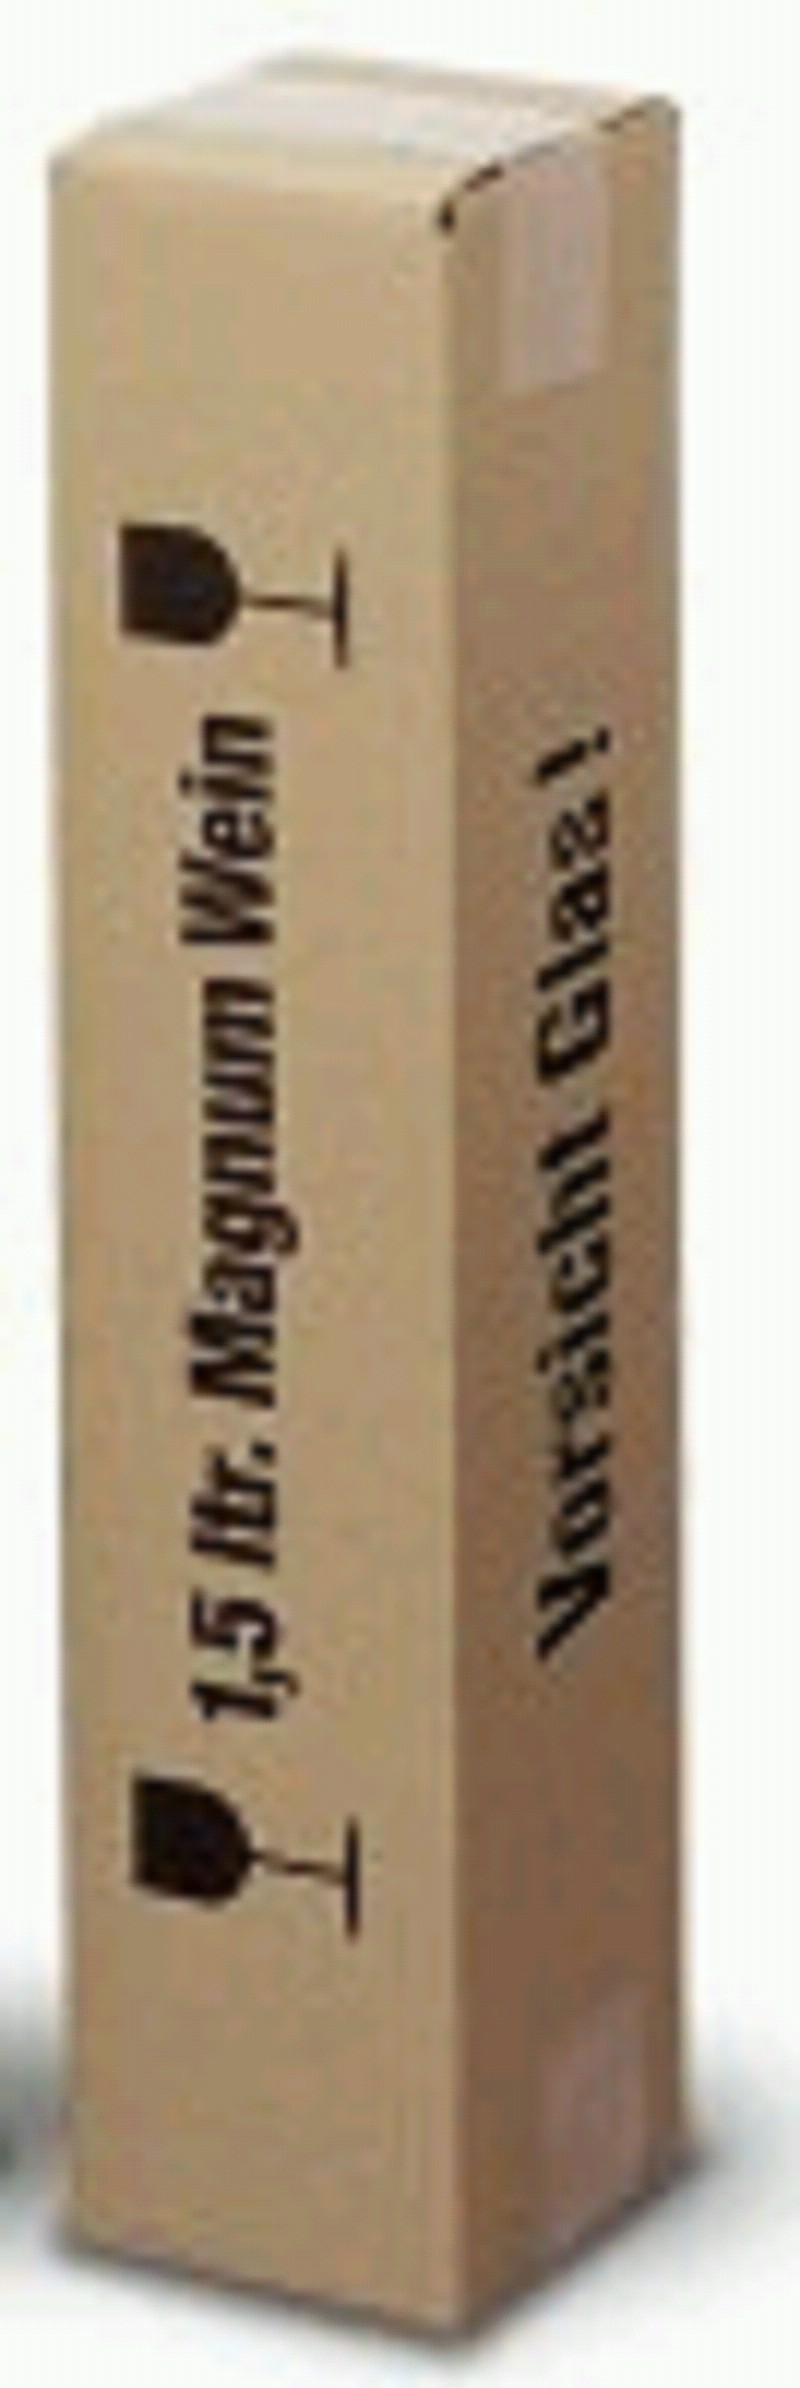 Flaschen-Versandkarton, 1 Flasche 1,5 ltr. Magnum Wein, PTZ-geprüft